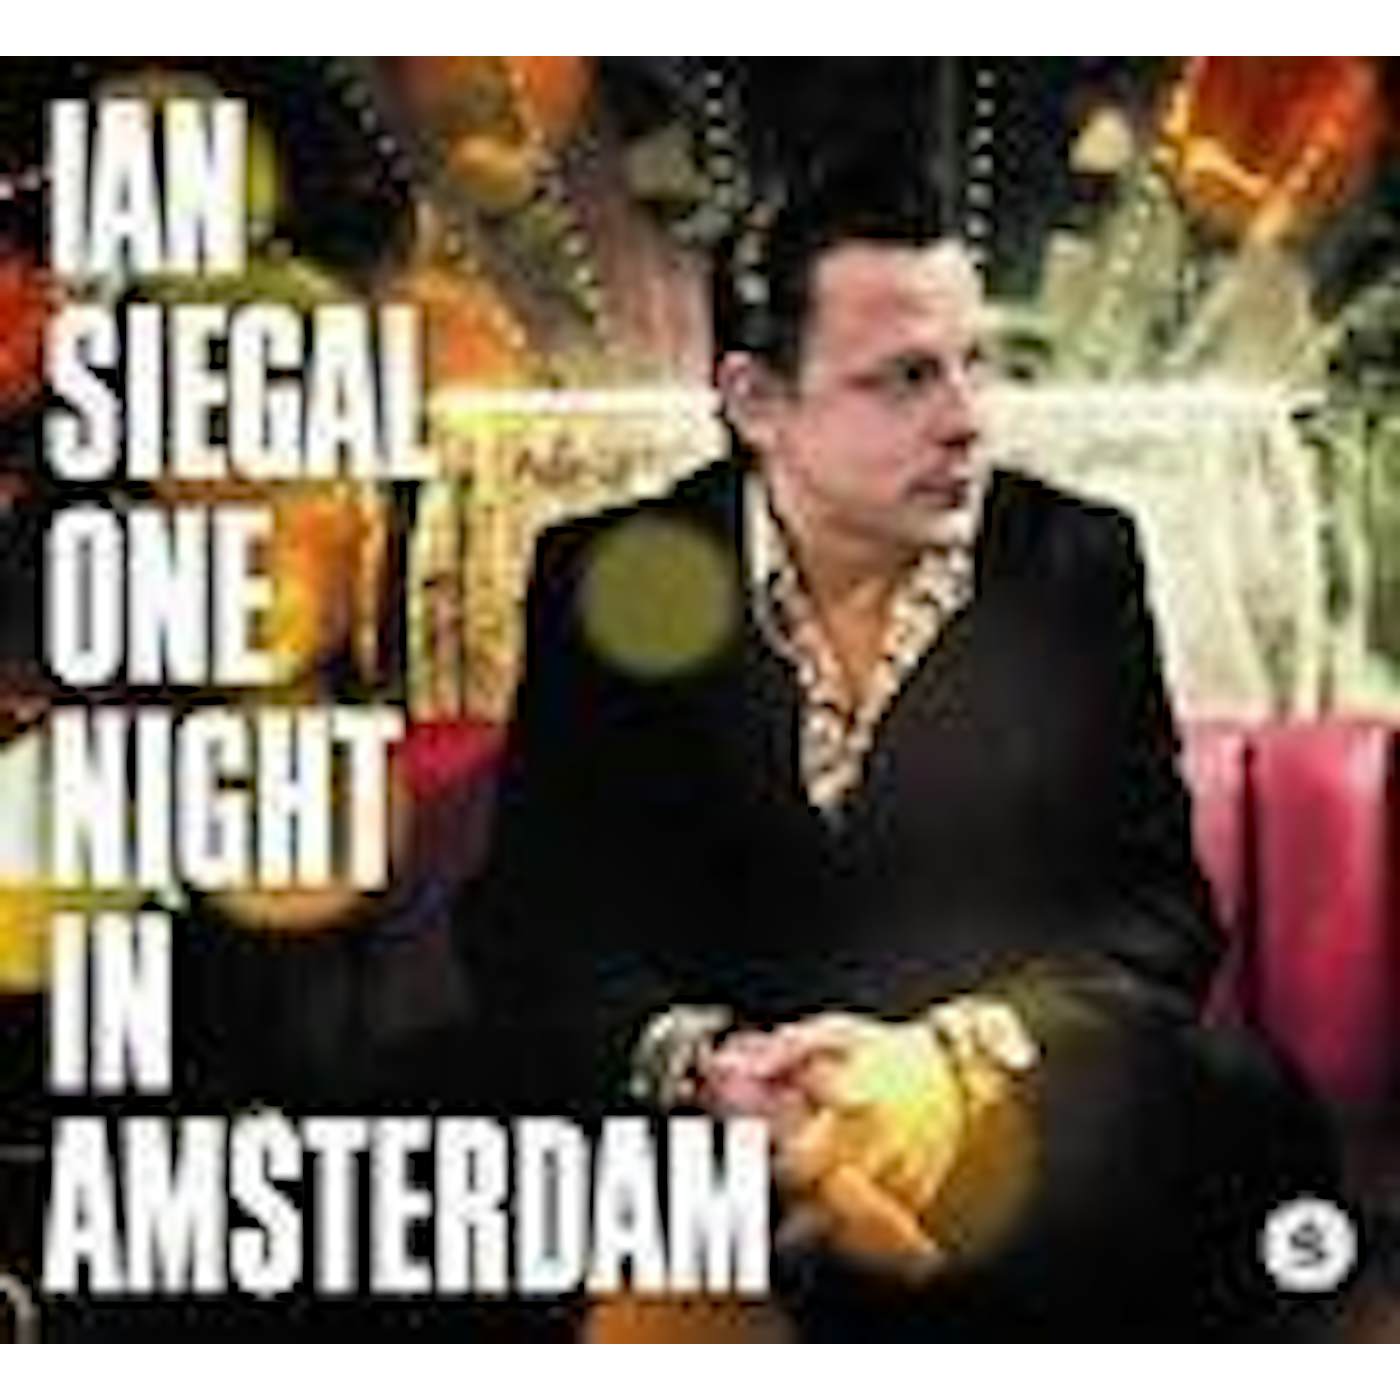 Ian Siegal ONE NIGHT IN AMSTERDAM CD